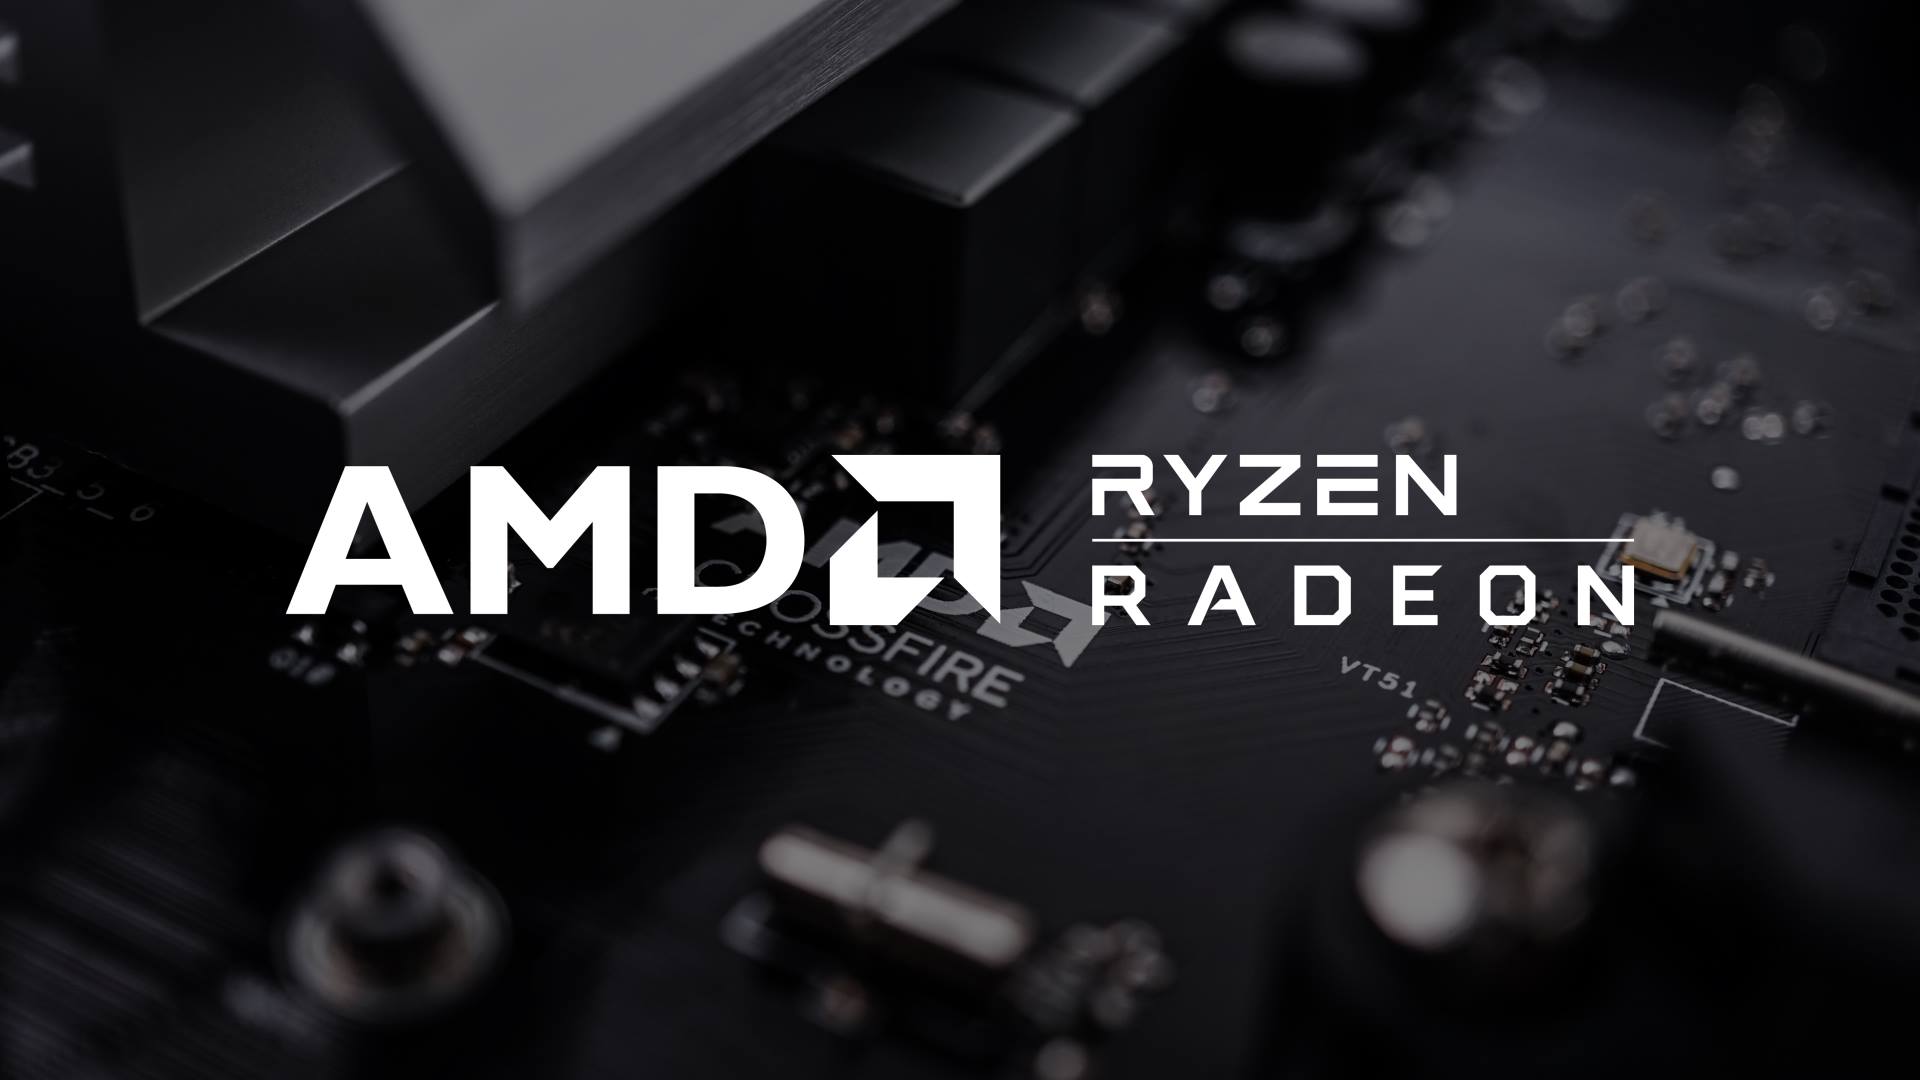 Amd Ryzen Radeon - HD Wallpaper 